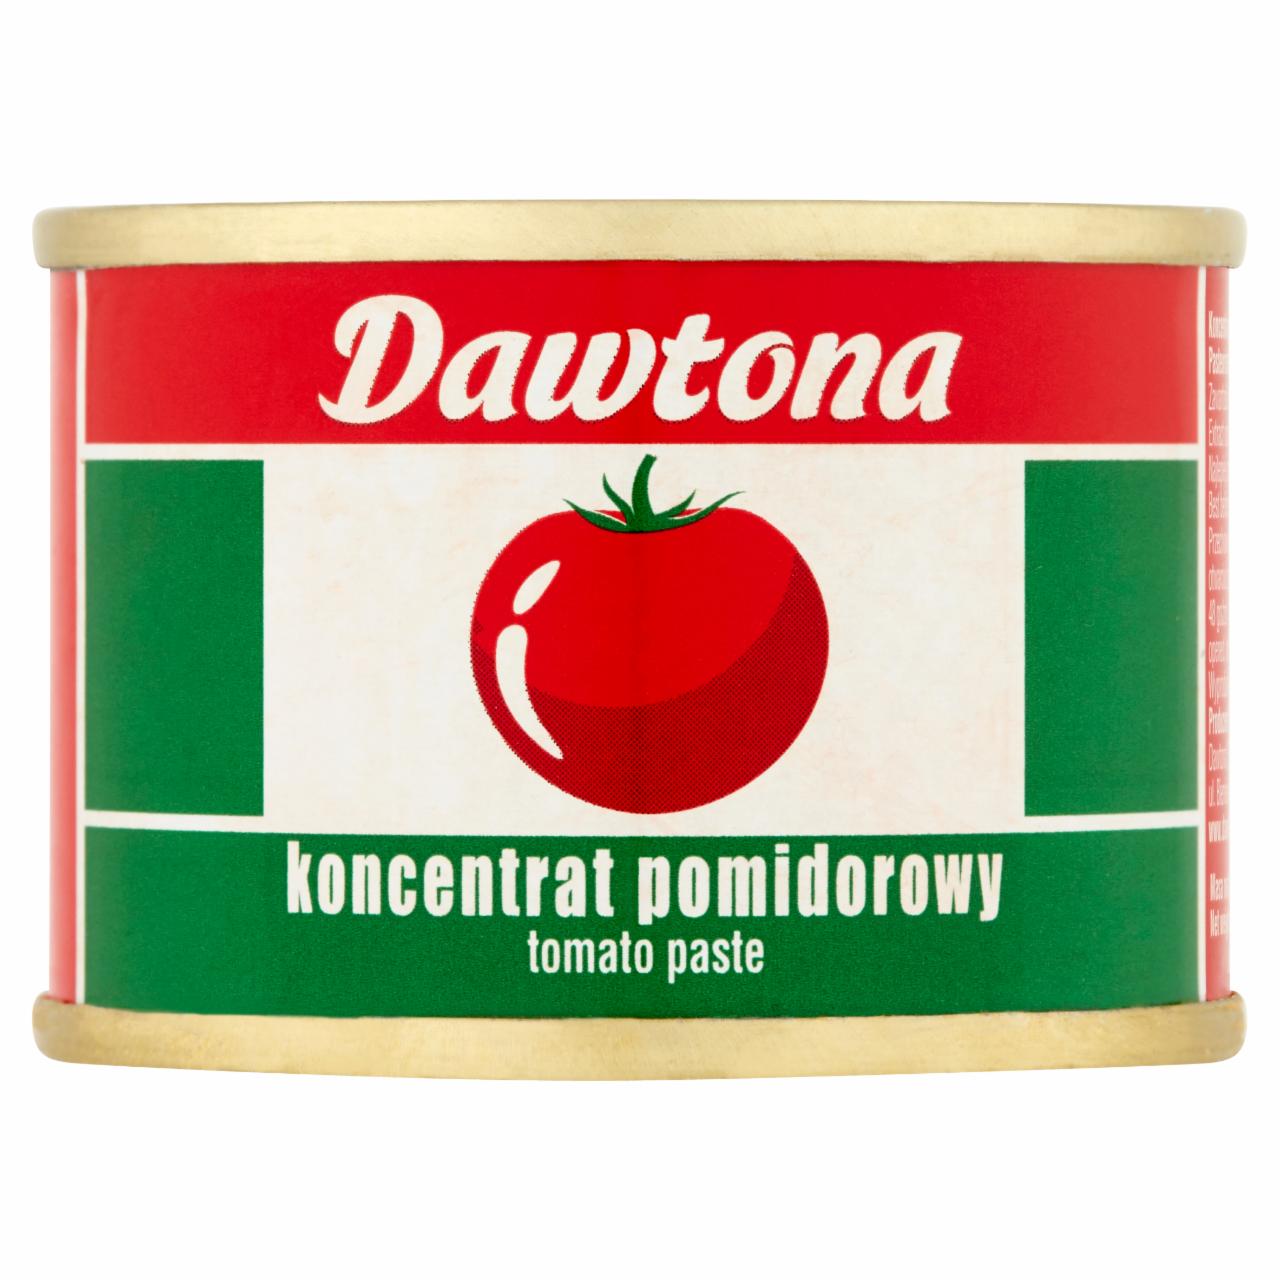 Zdjęcia - Dawtona Koncentrat pomidorowy 70 g